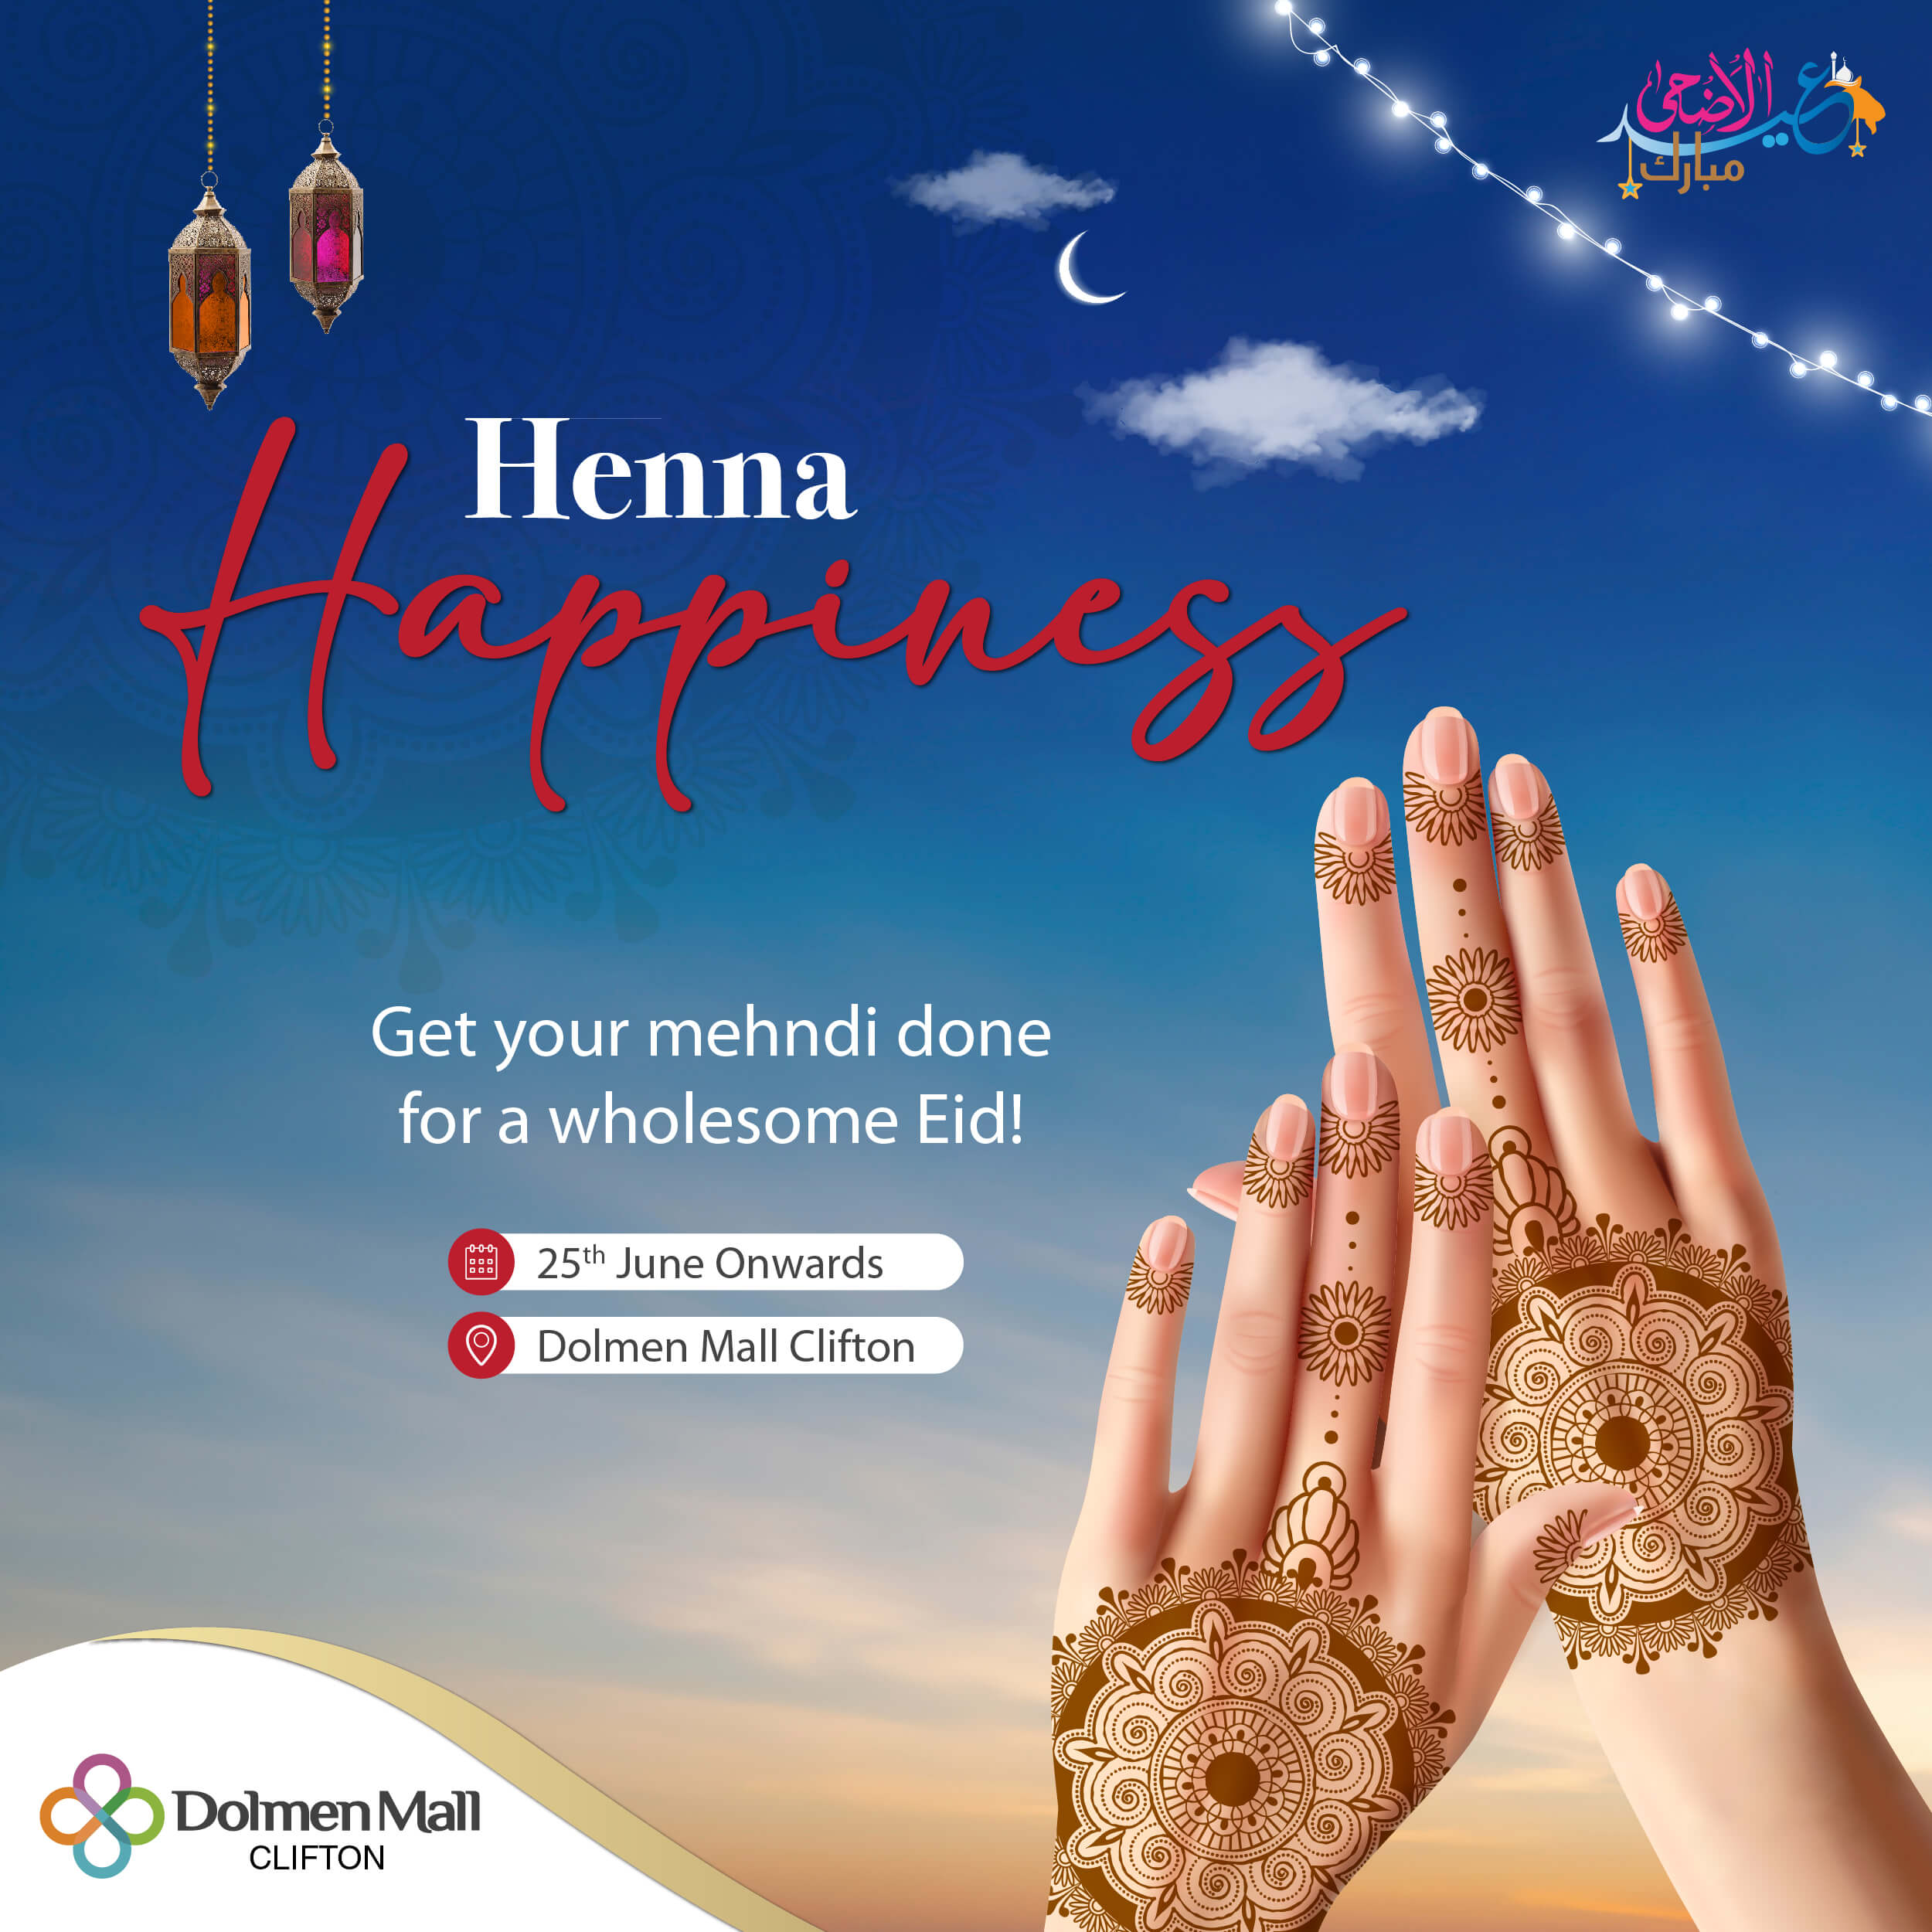 4.Eid ul Adha (Henna Happiness)